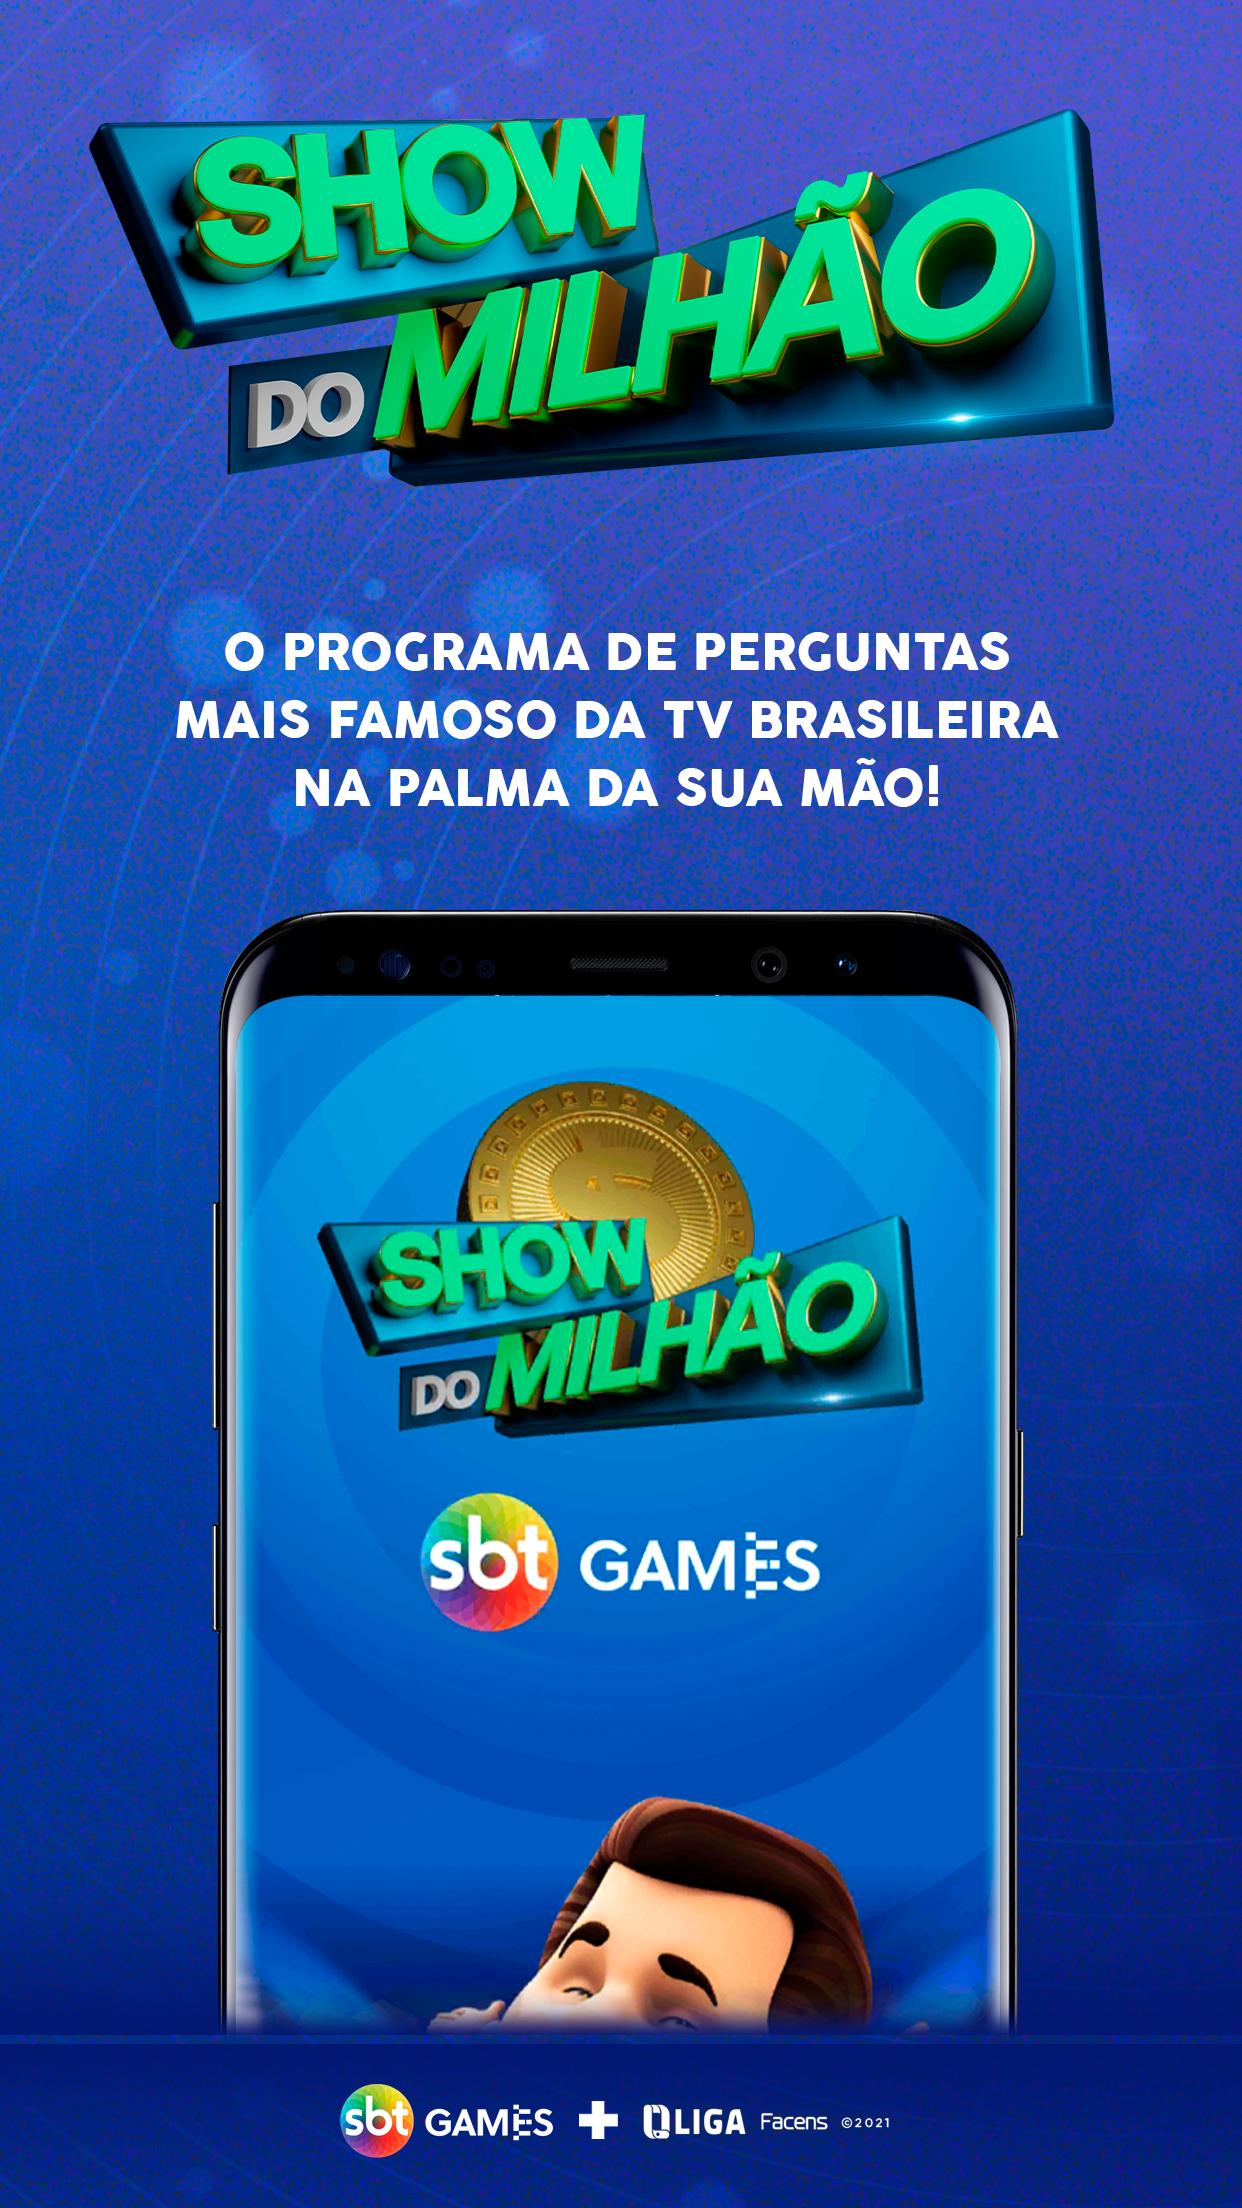 Show do Milionário 2019 - Jogo do Milhão Online安卓版游戏APK下载